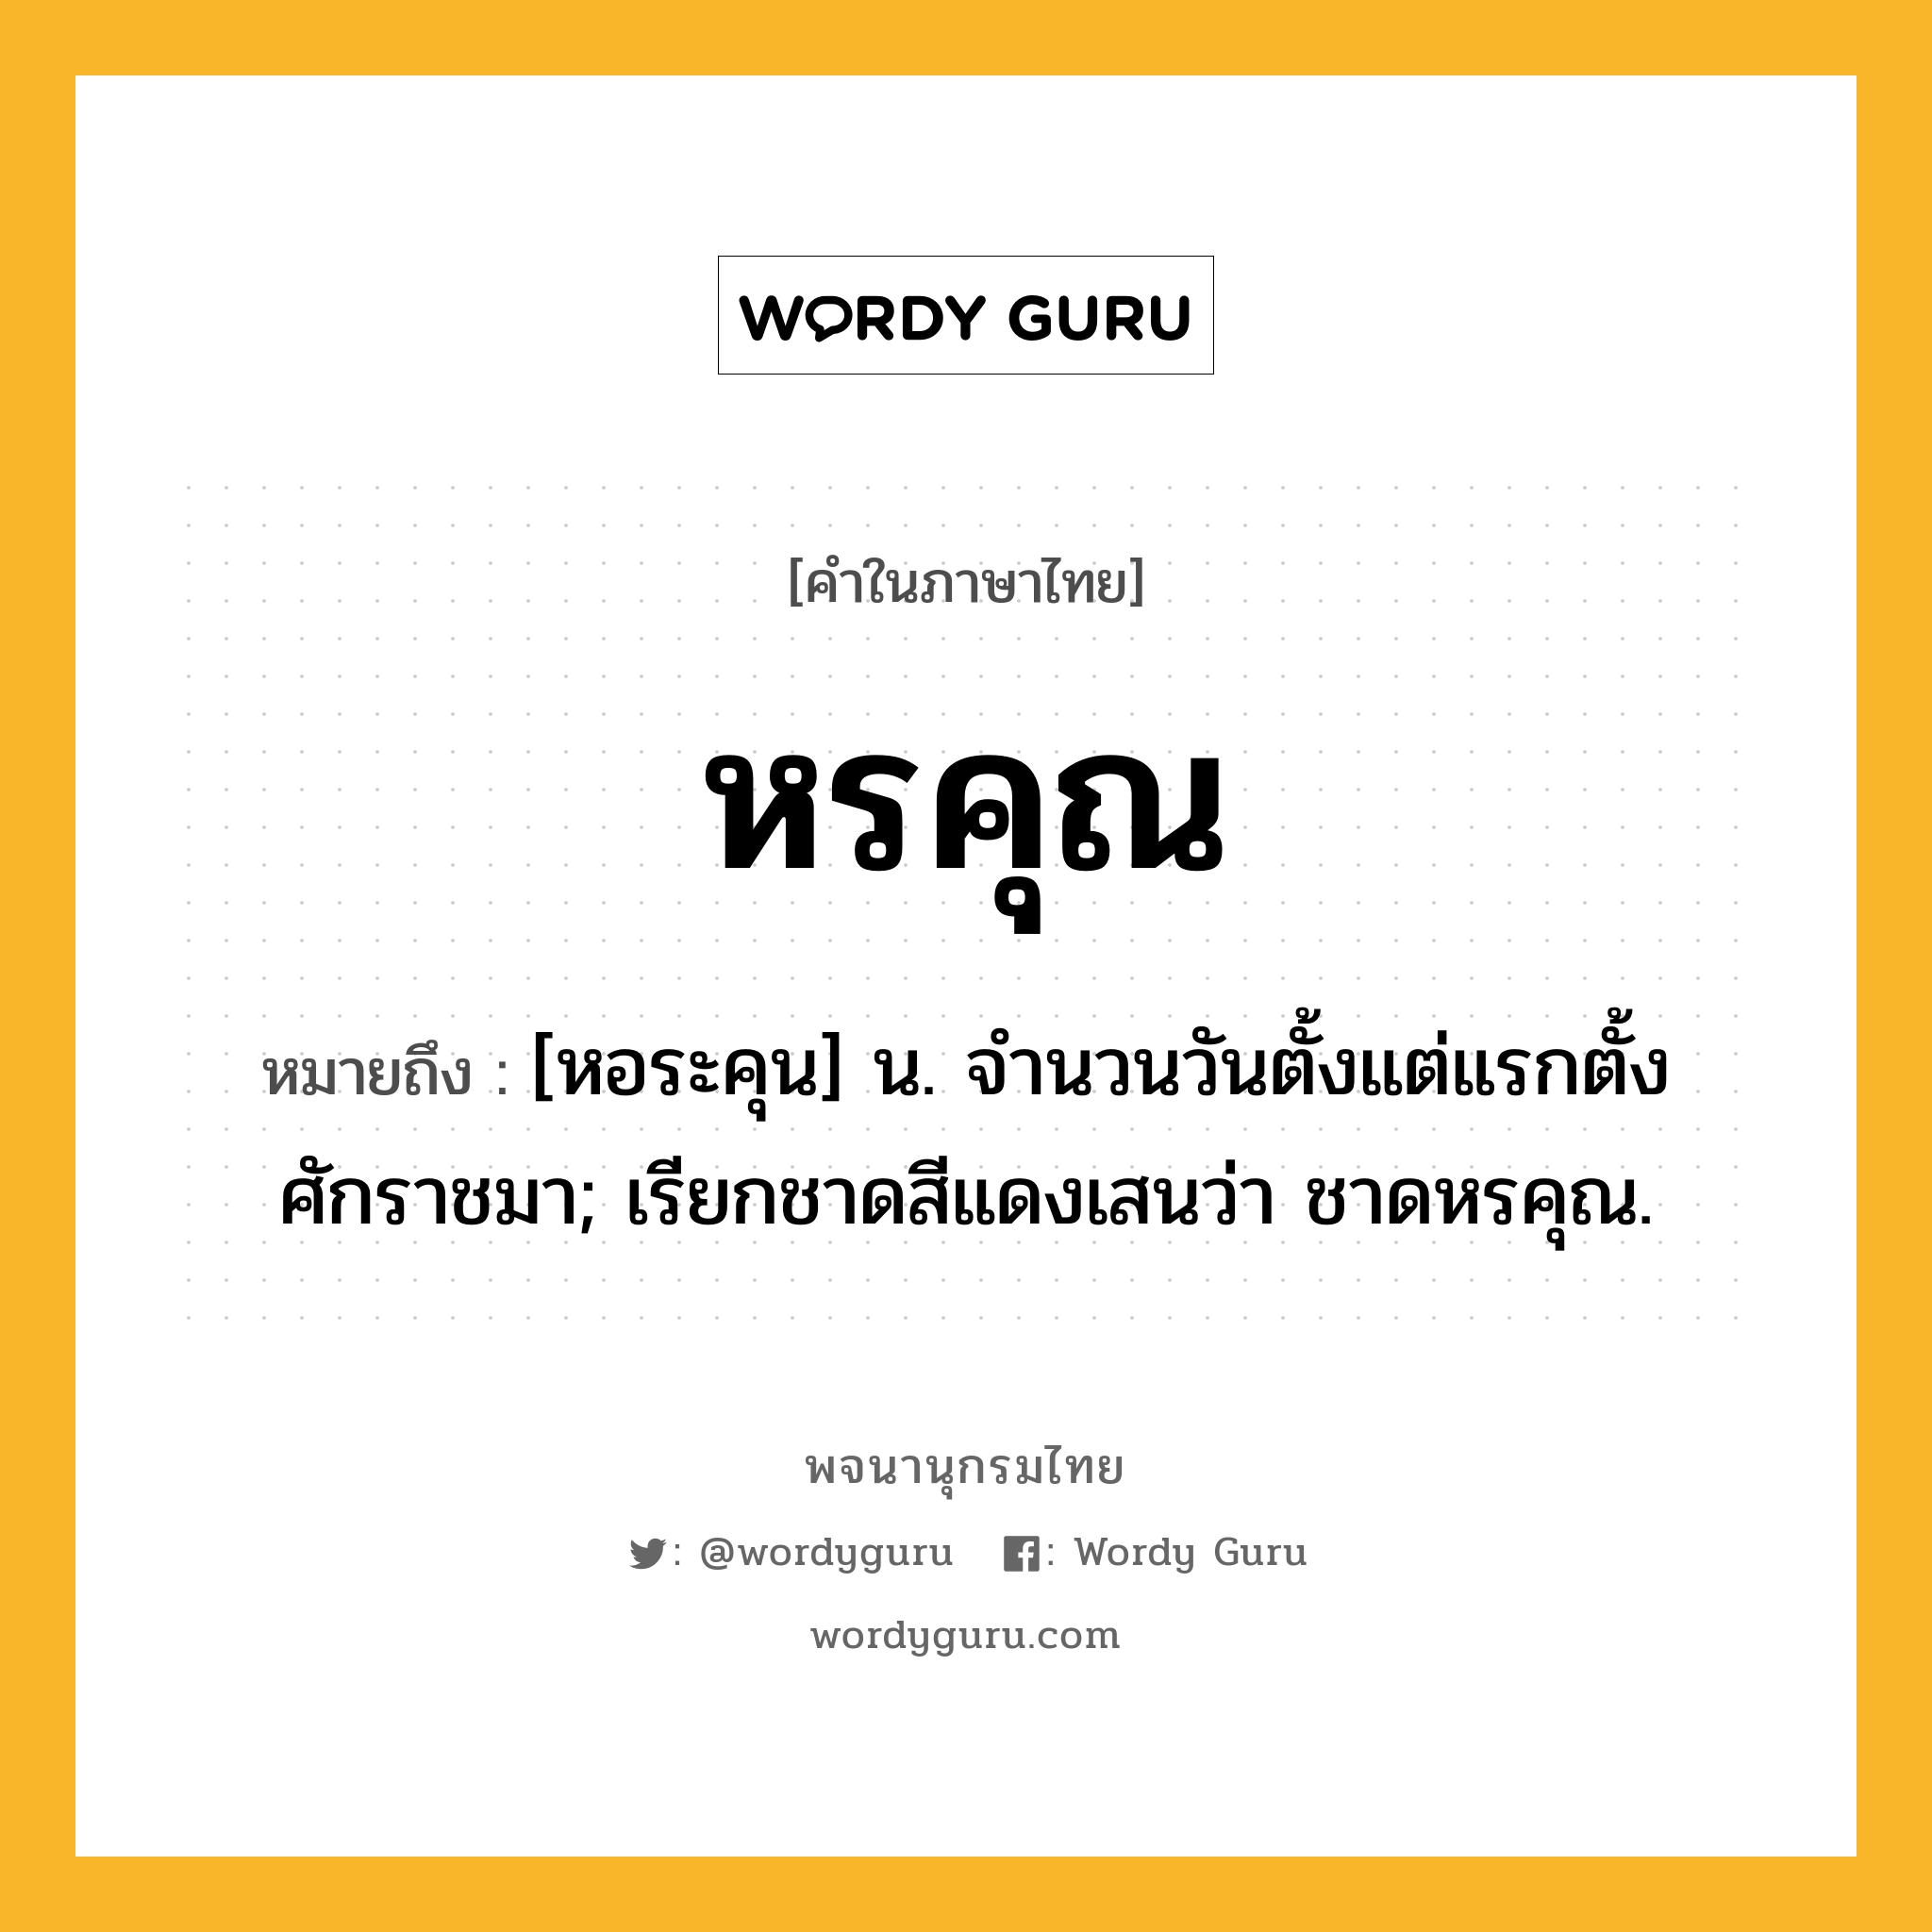 หรคุณ ความหมาย หมายถึงอะไร?, คำในภาษาไทย หรคุณ หมายถึง [หอระคุน] น. จํานวนวันตั้งแต่แรกตั้งศักราชมา; เรียกชาดสีแดงเสนว่า ชาดหรคุณ.